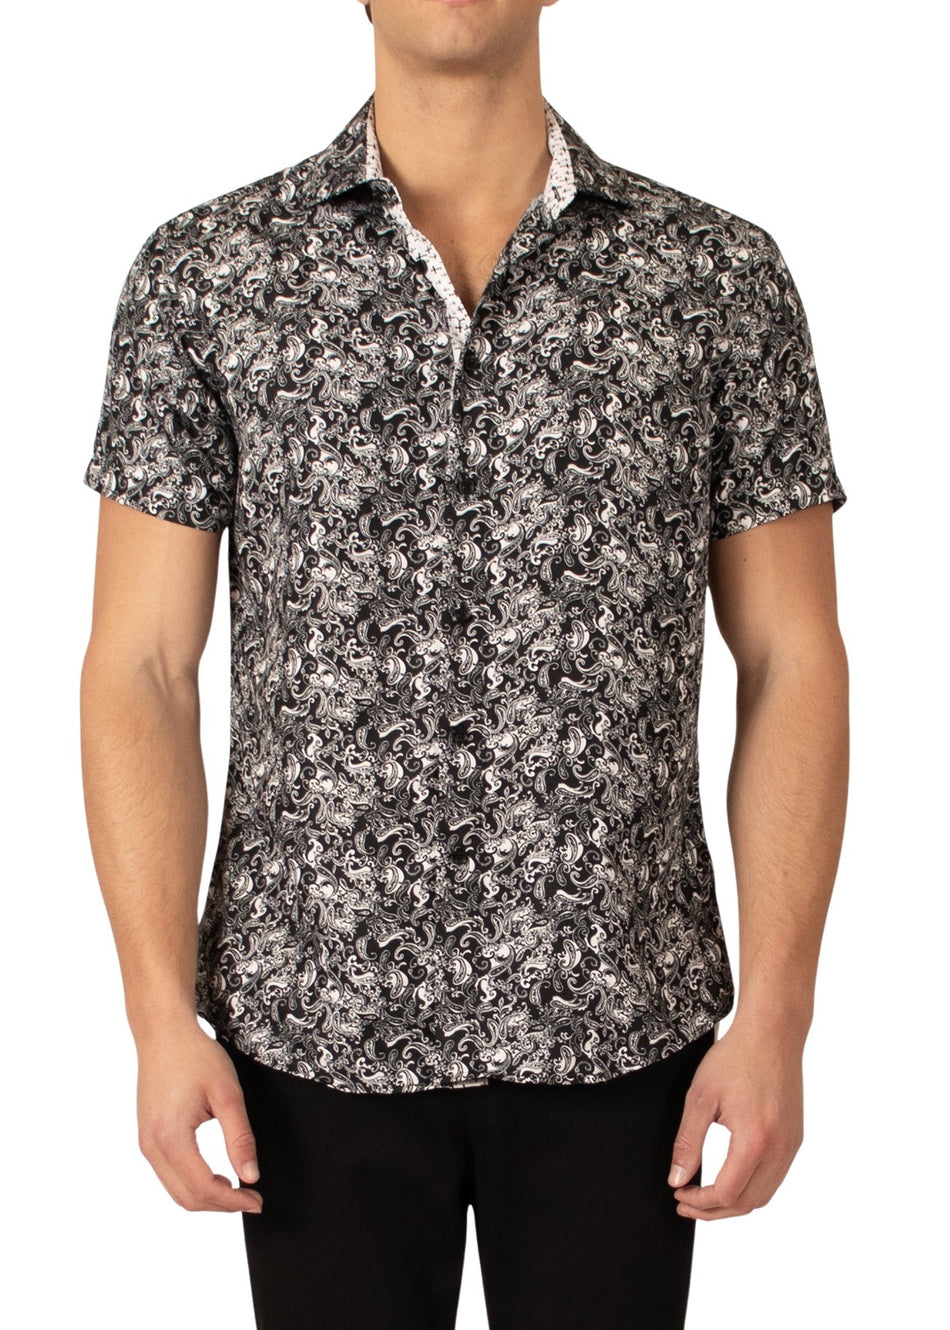 222097 - Black Button Up Short Sleeve Shirt